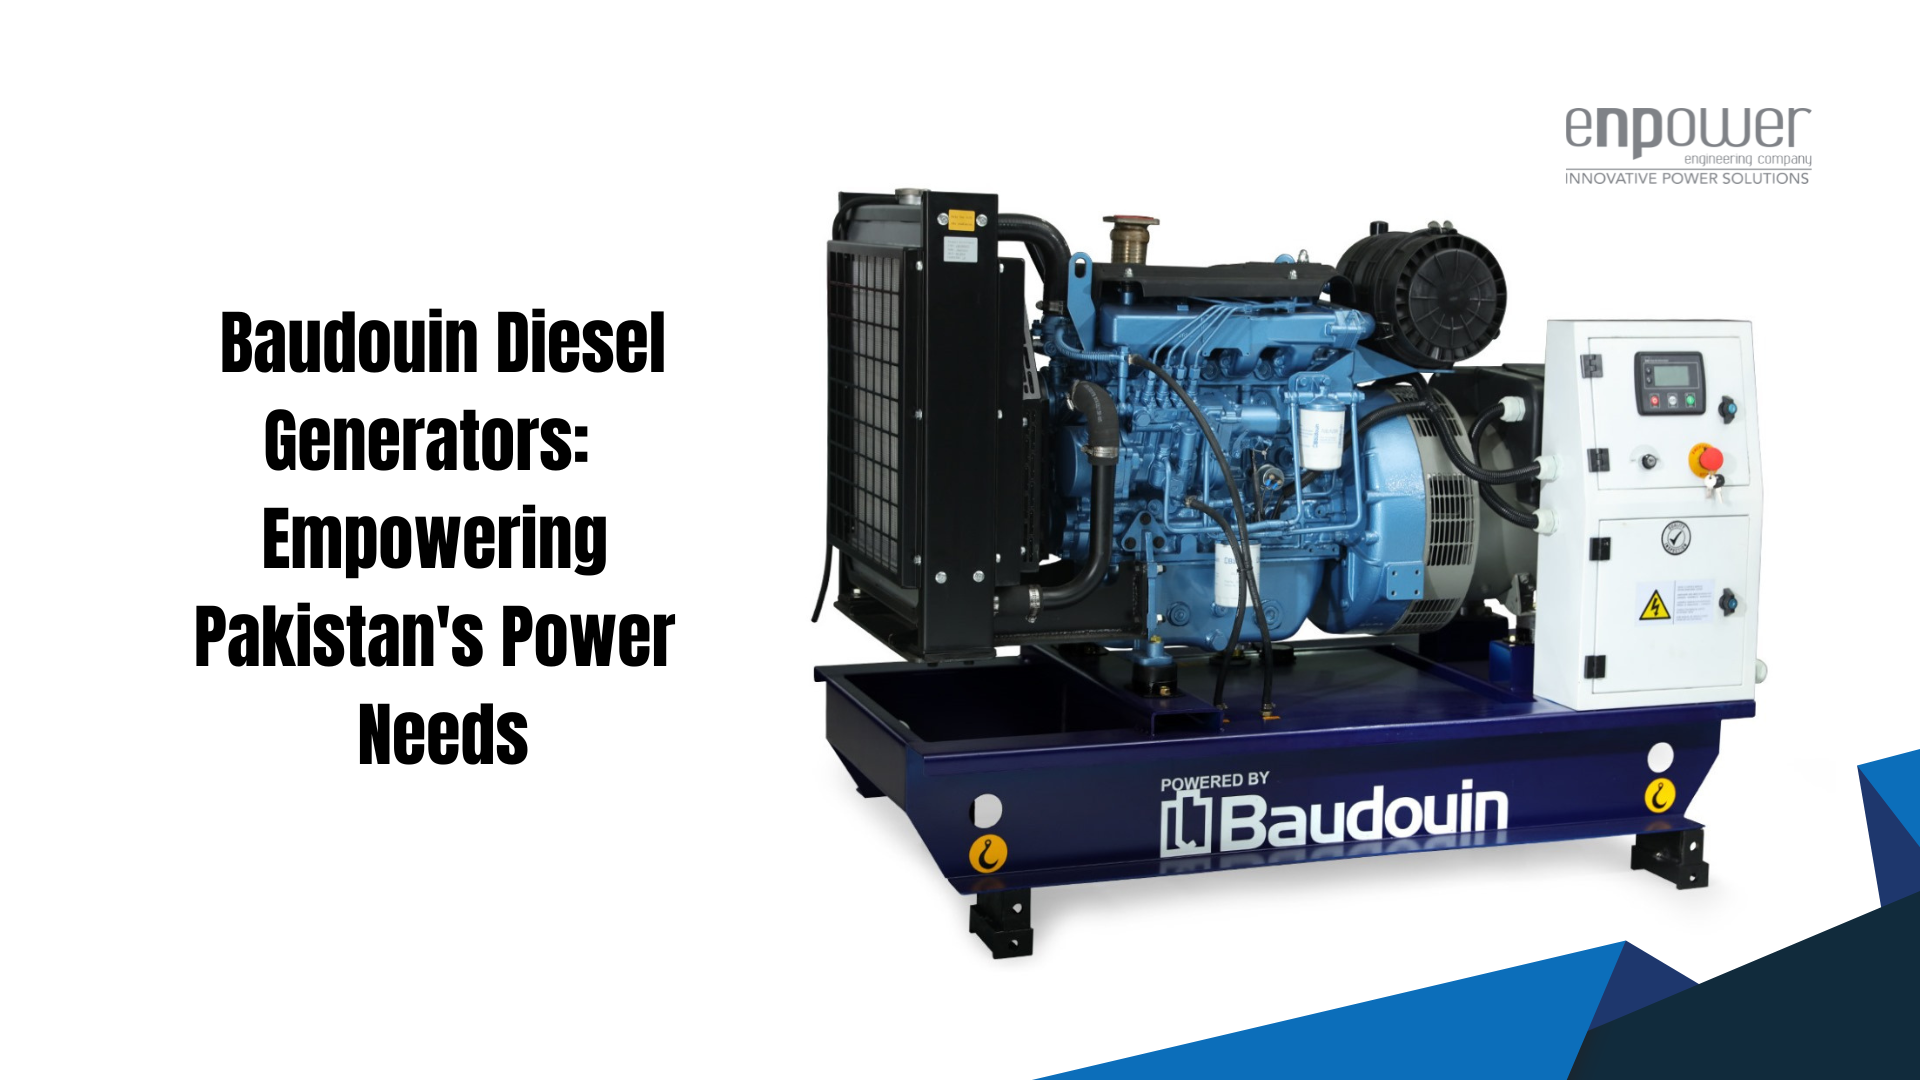 Baudouin Diesel Generators Empowering Pakistan's Power Needs